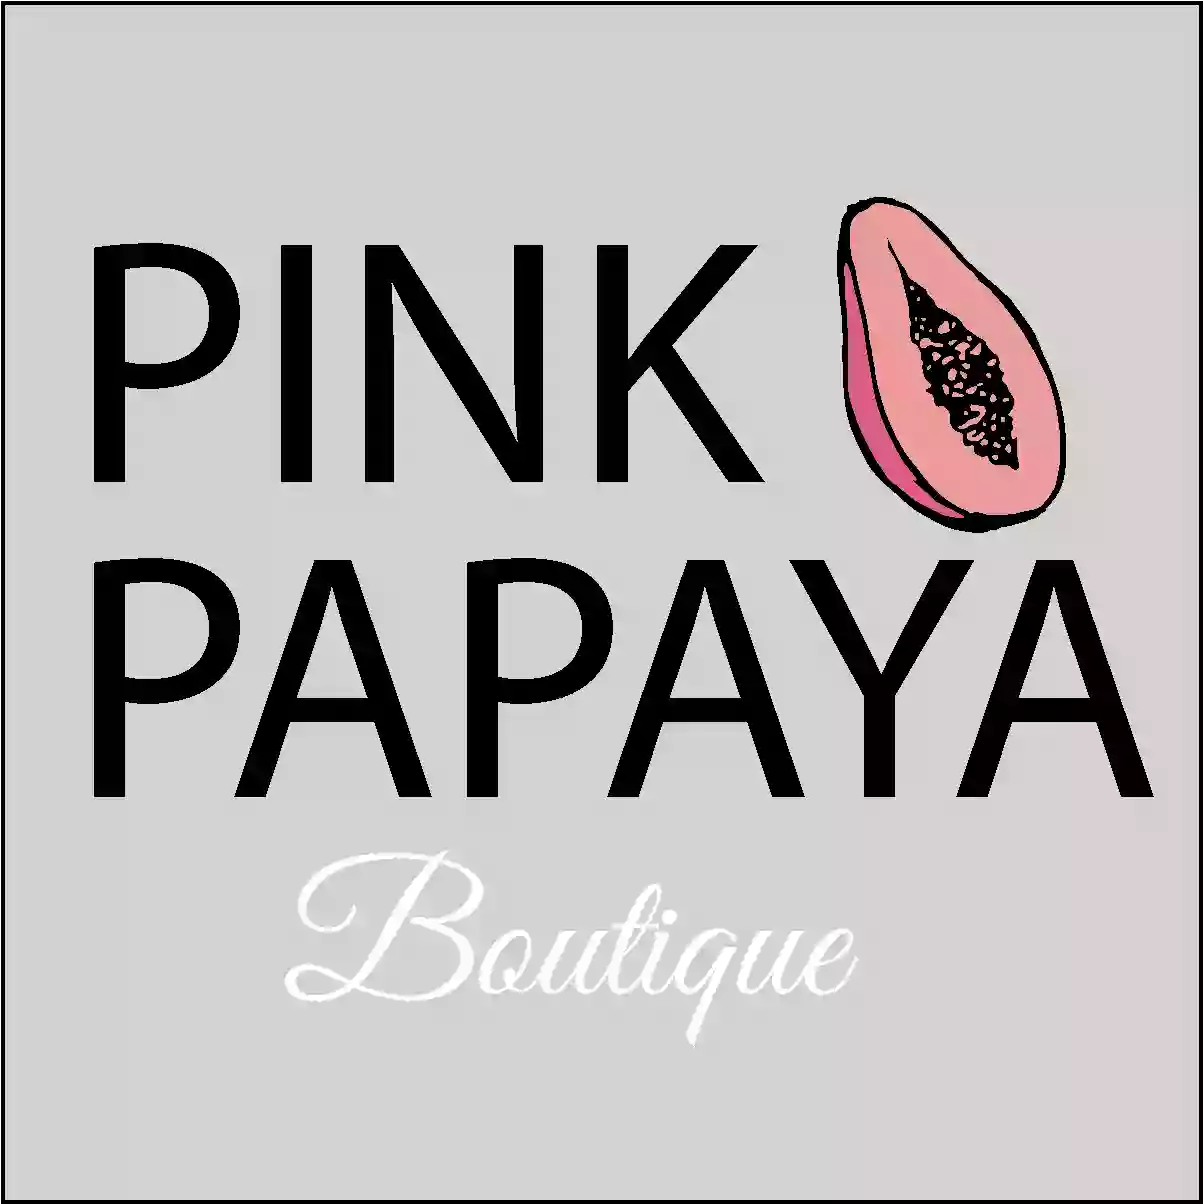 The Pink Papaya Wax and Lash Boutique LLC